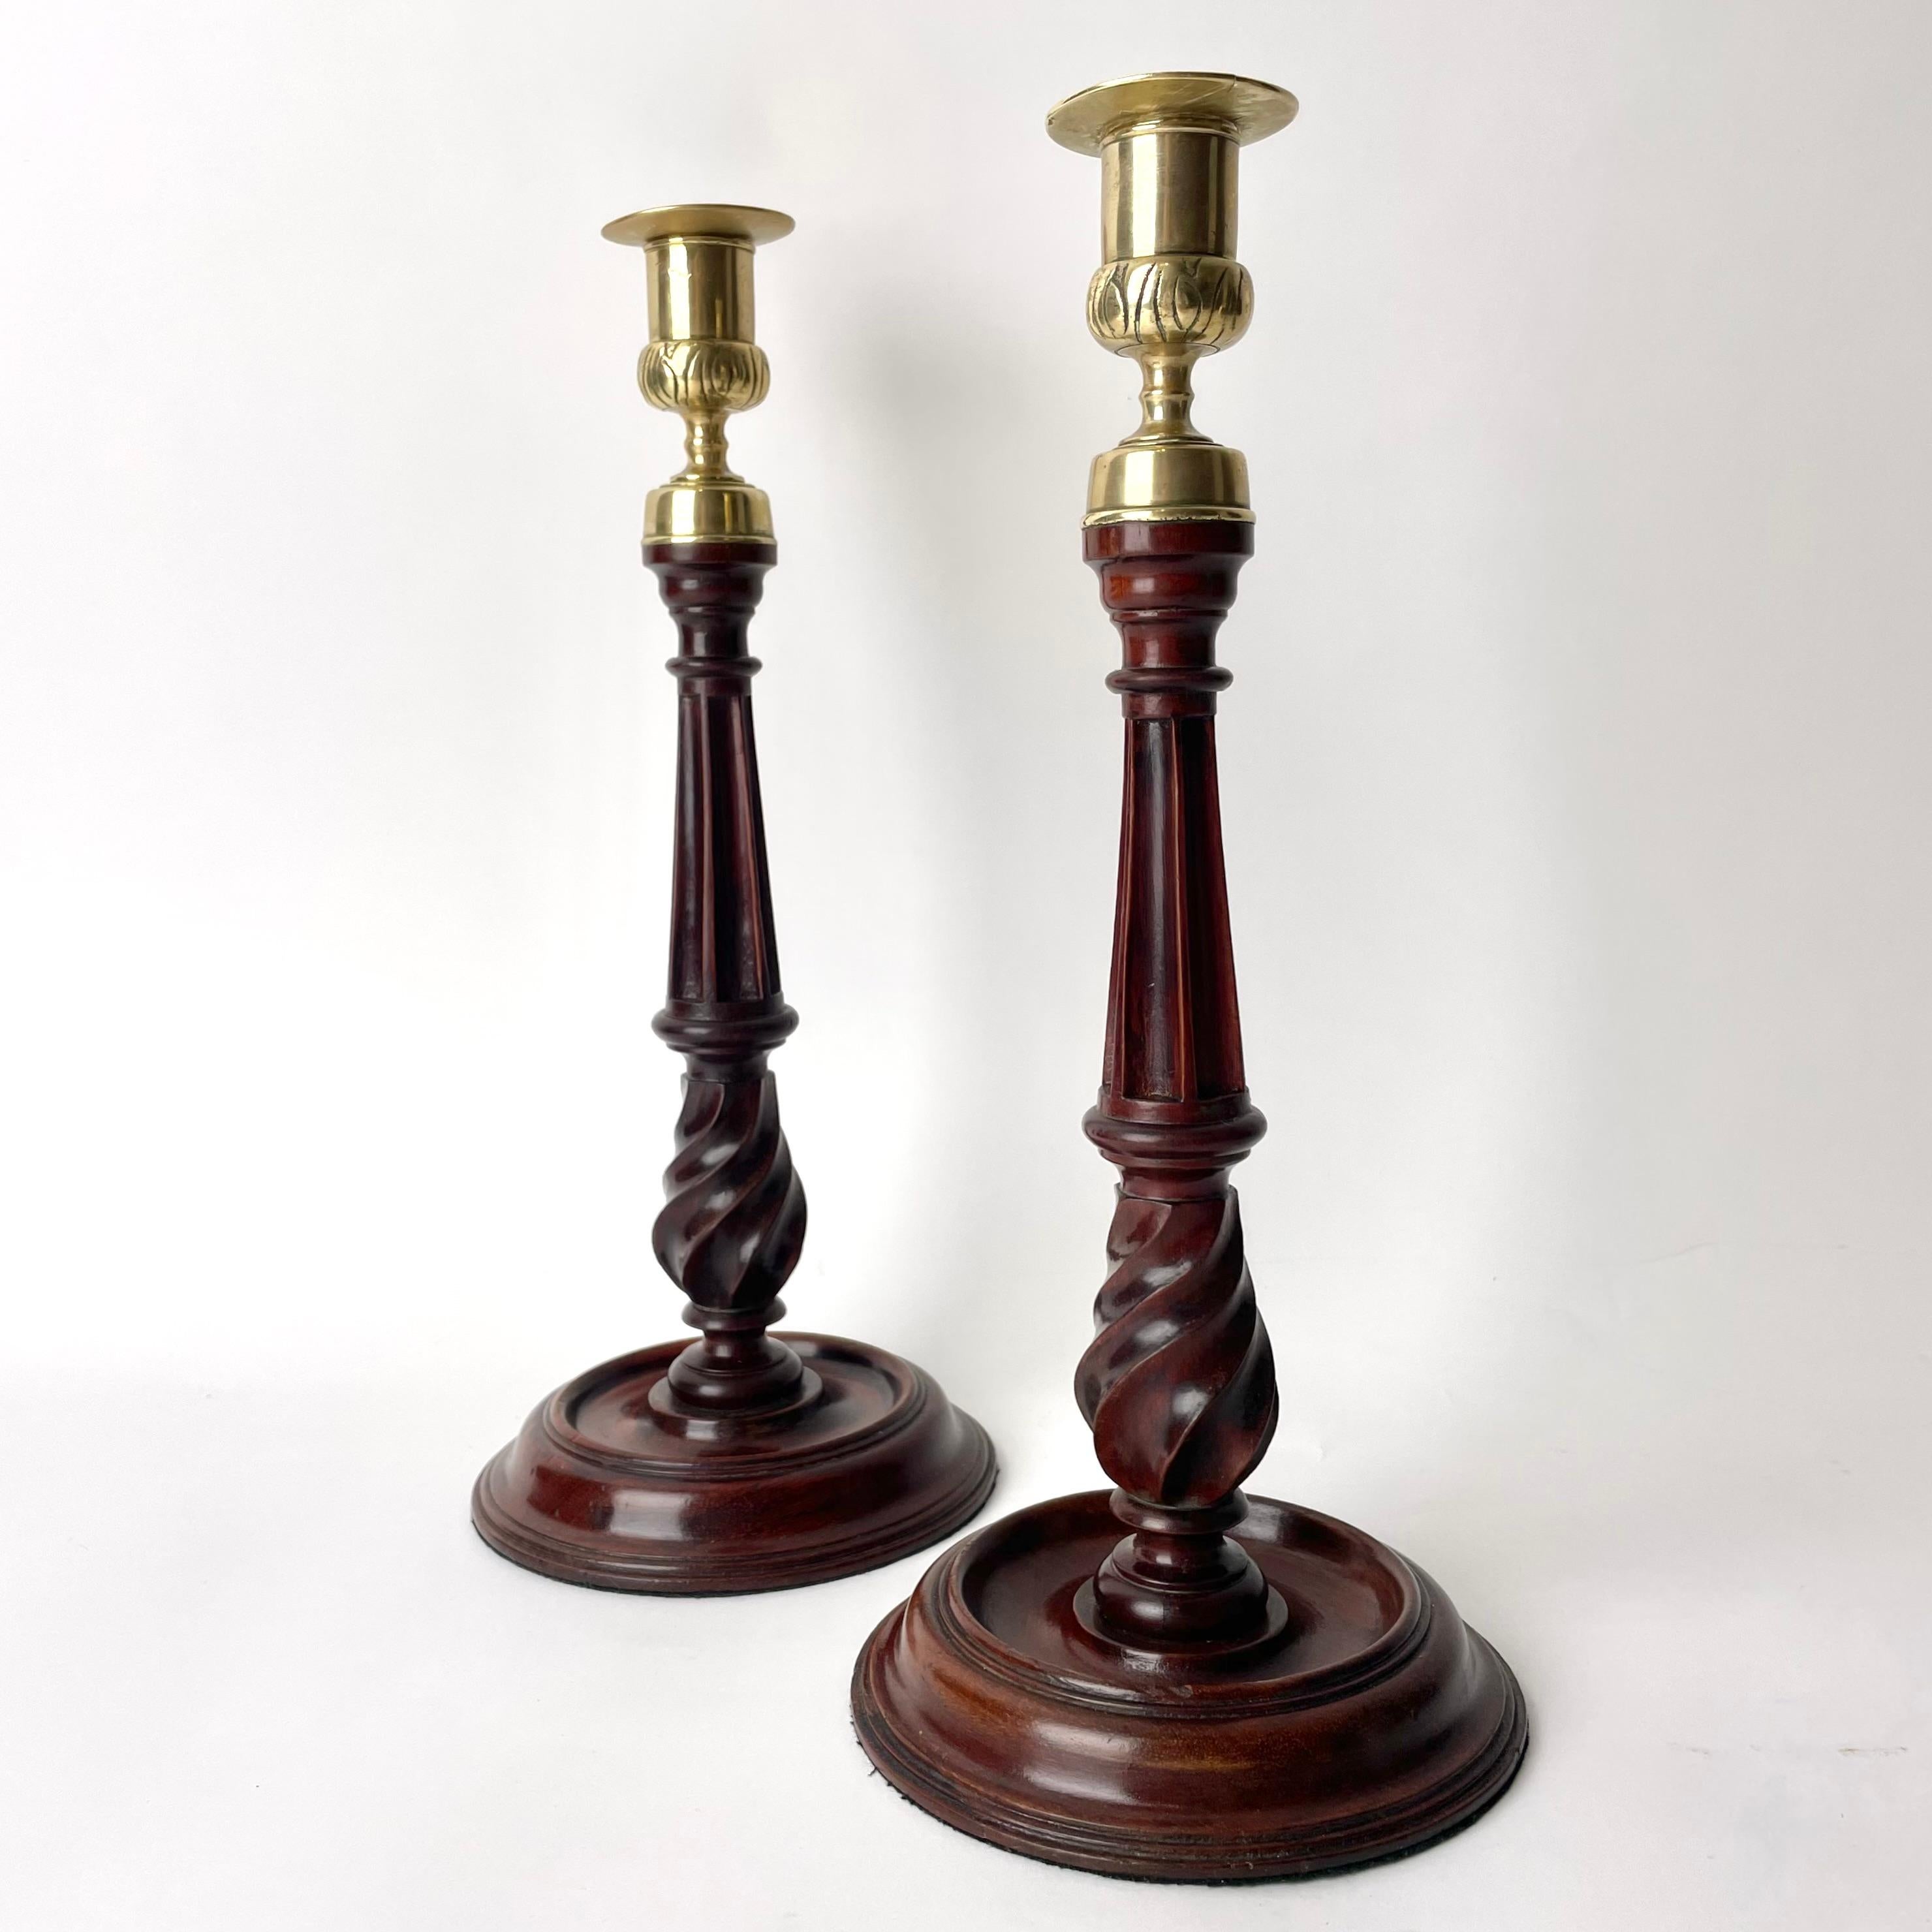 Ein Paar Kerzenständer aus Mahagoni (Swietenia mahagoni) und Messing. Georg III. Hergestellt in England im späten 18. Jahrhundert. 

Diese reich verzierten und mit seltenen und komplizierten Details versehenen Kerzenständer bestehen aus einem Sockel